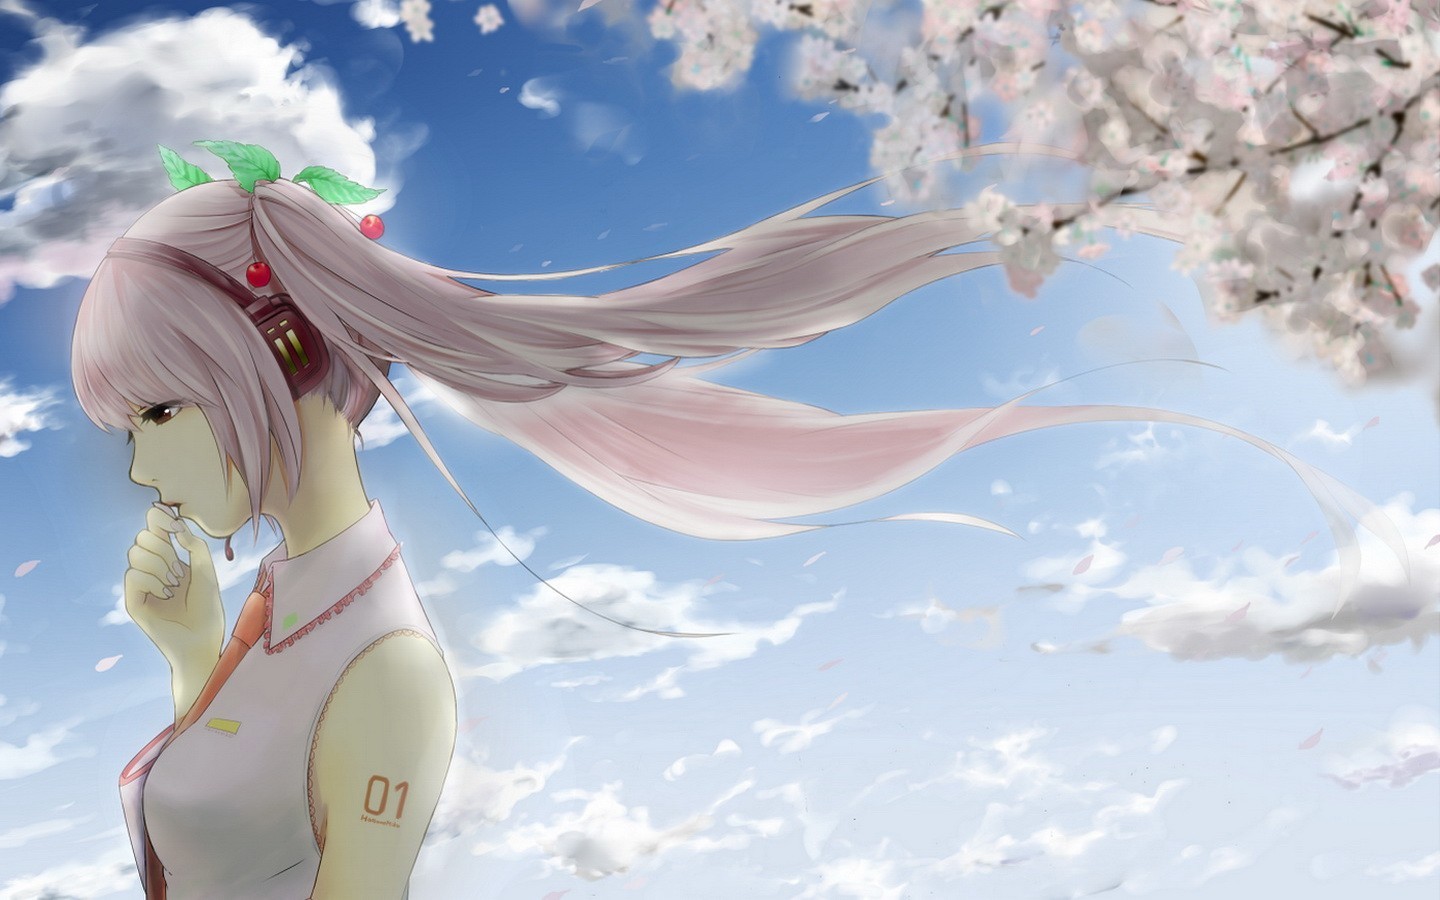 Anime 1440x900 anime anime girls Vocaloid pink hair long hair headphones cherry blossom